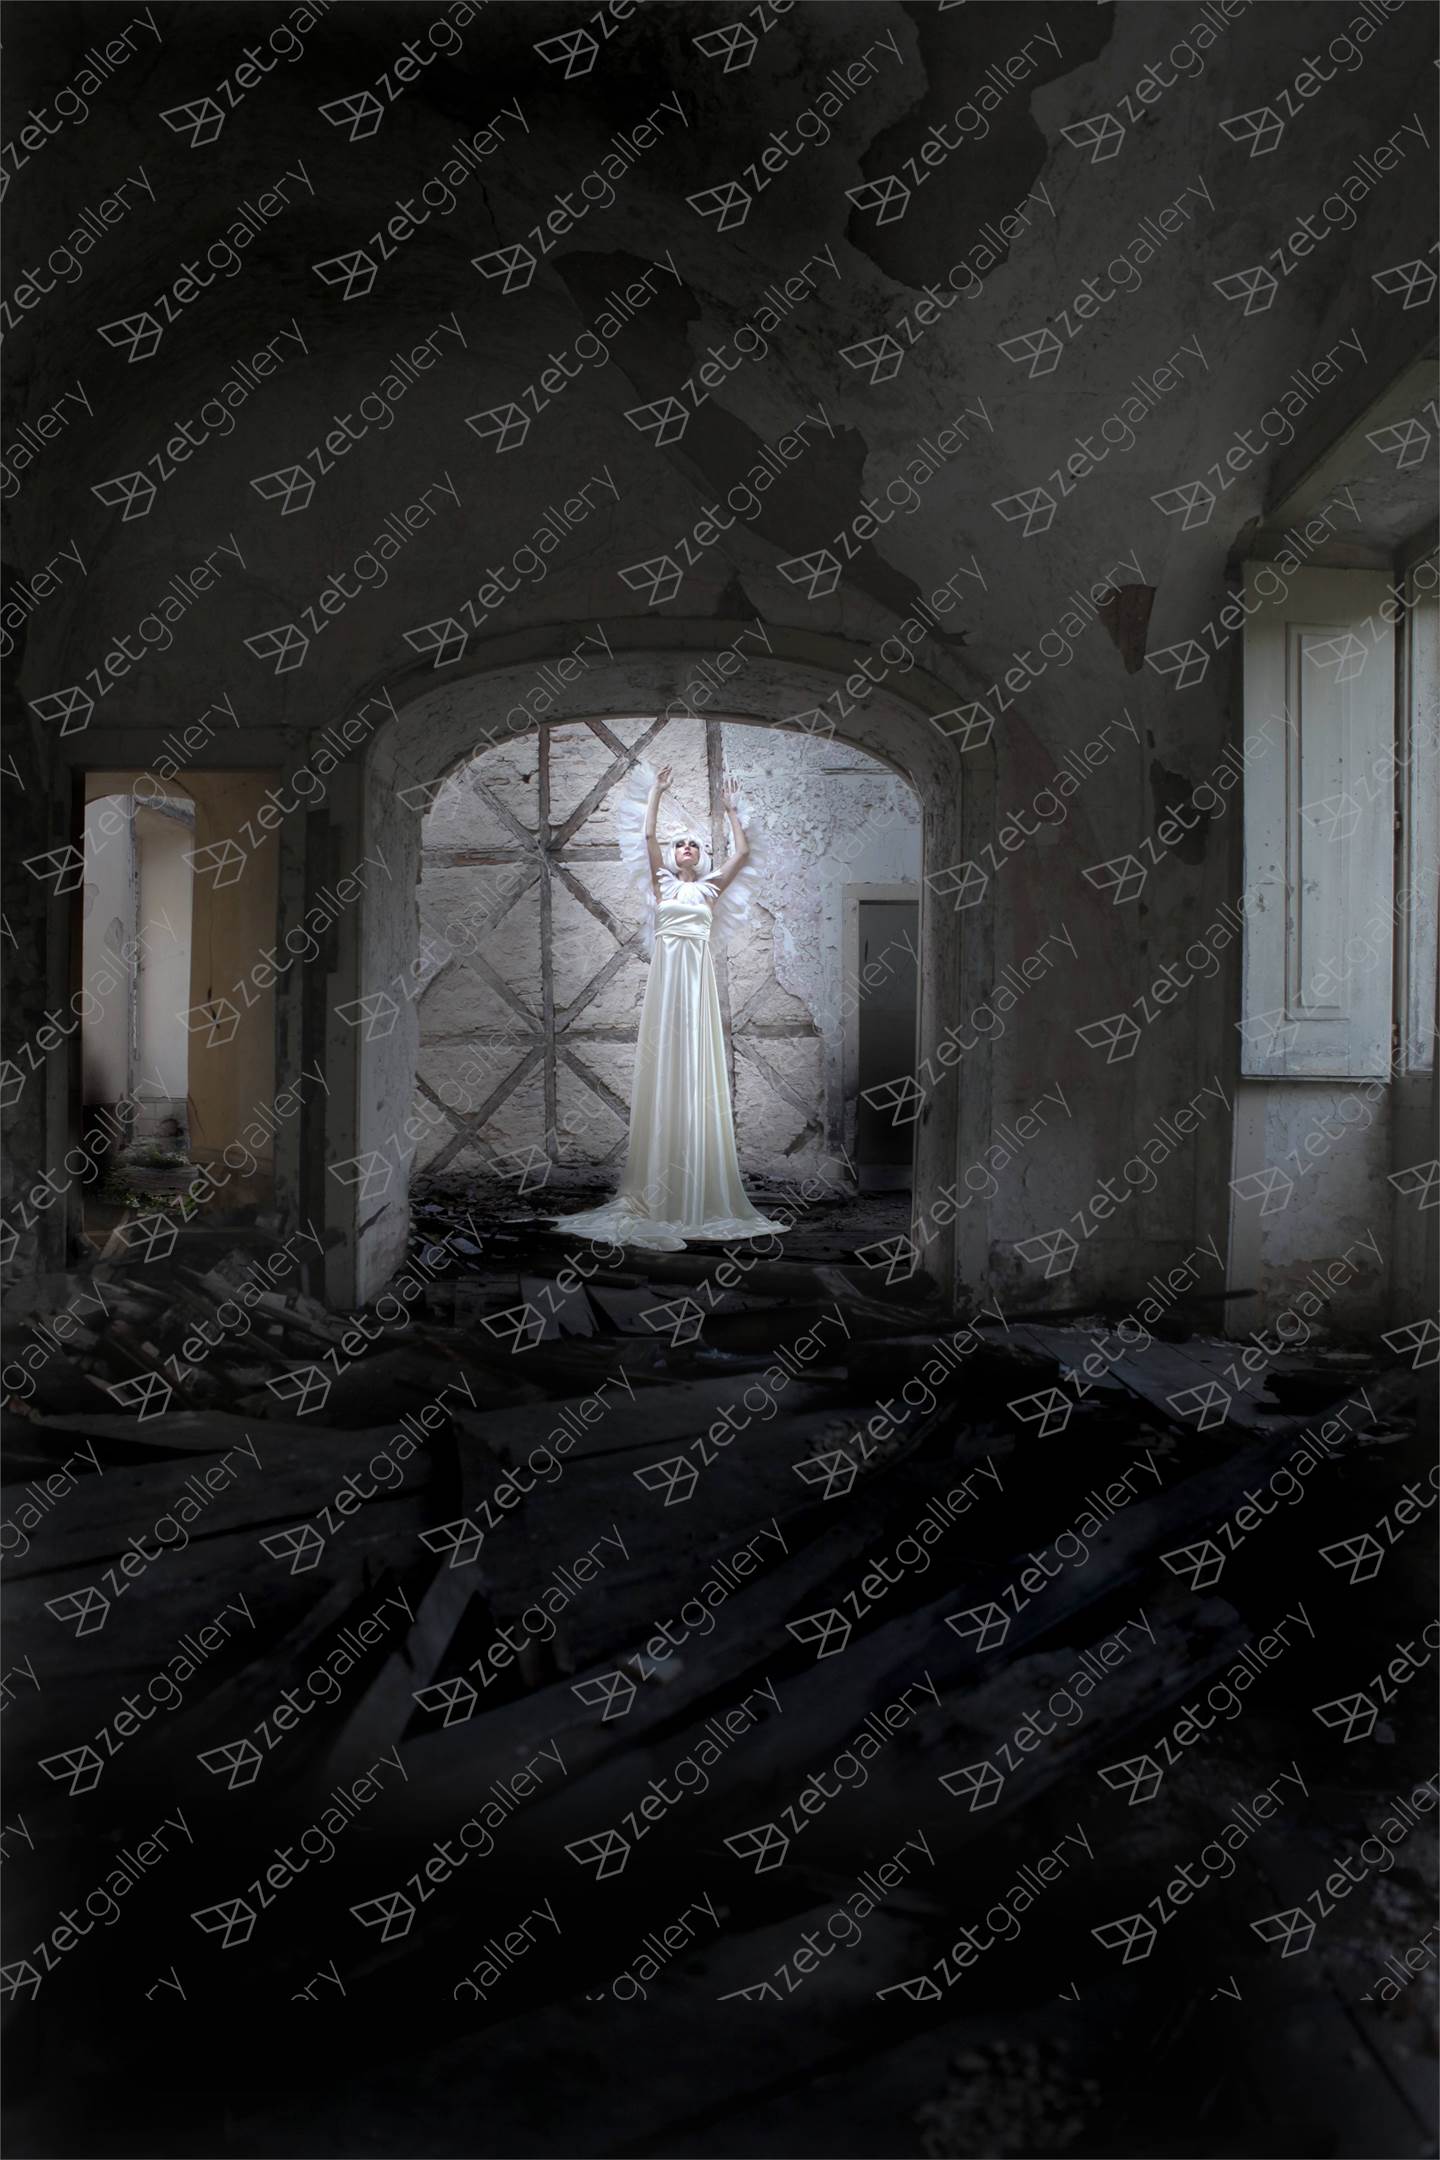 Das ruínas de mim, original Cuerpo Digital Fotografía de Claudia Clemente